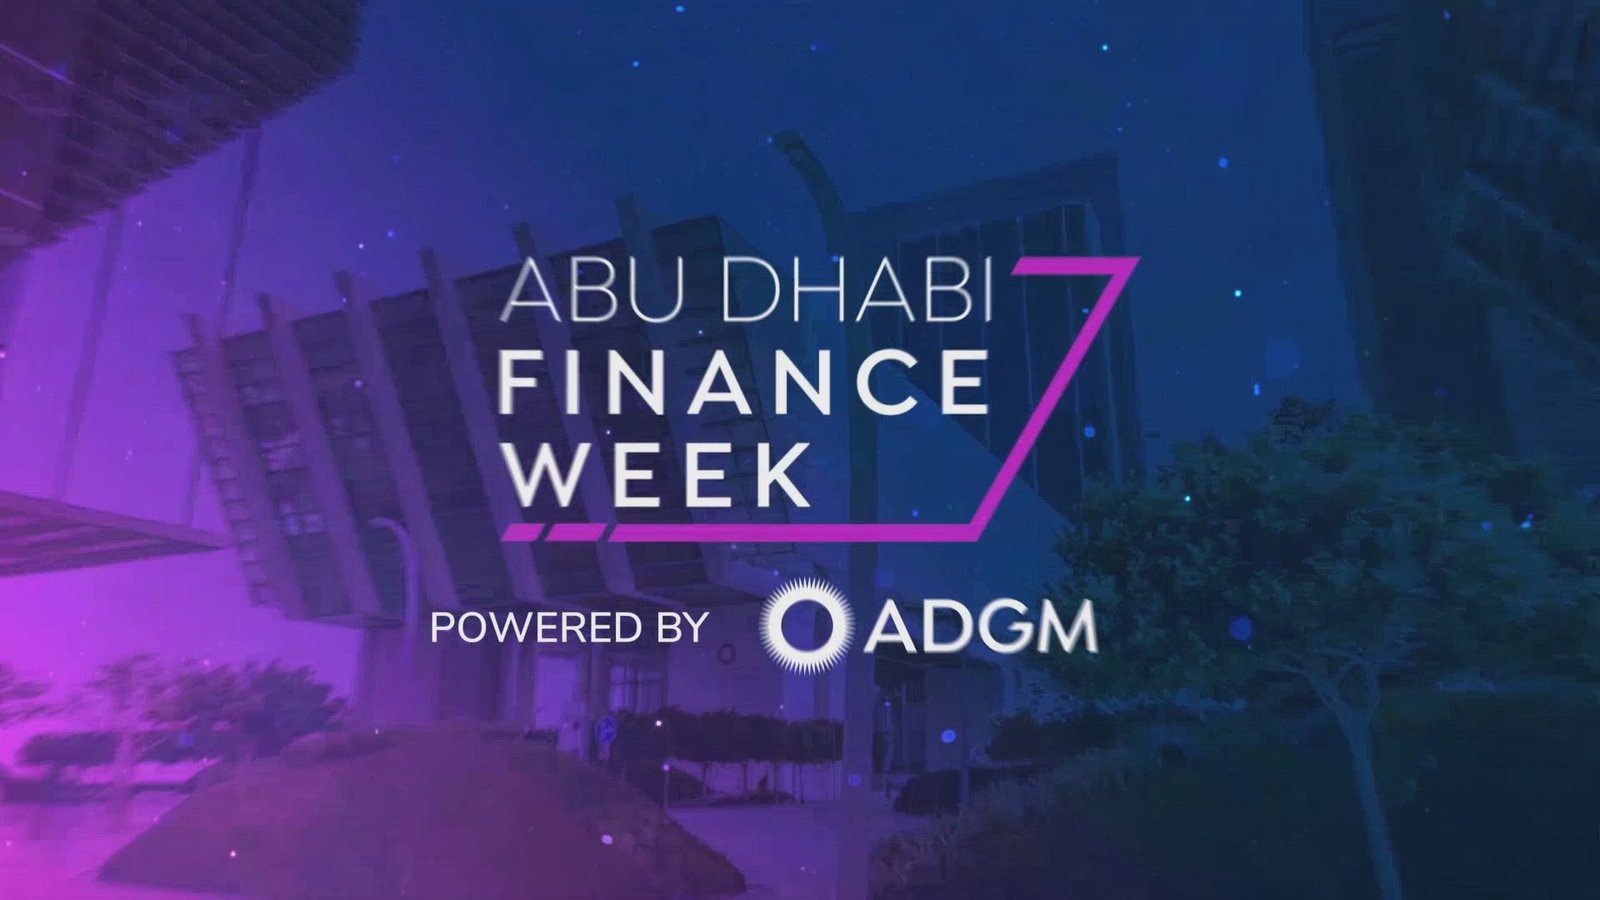 Gulf Creative - Dubai's Award Winning Marketing Agency | ADGM Project